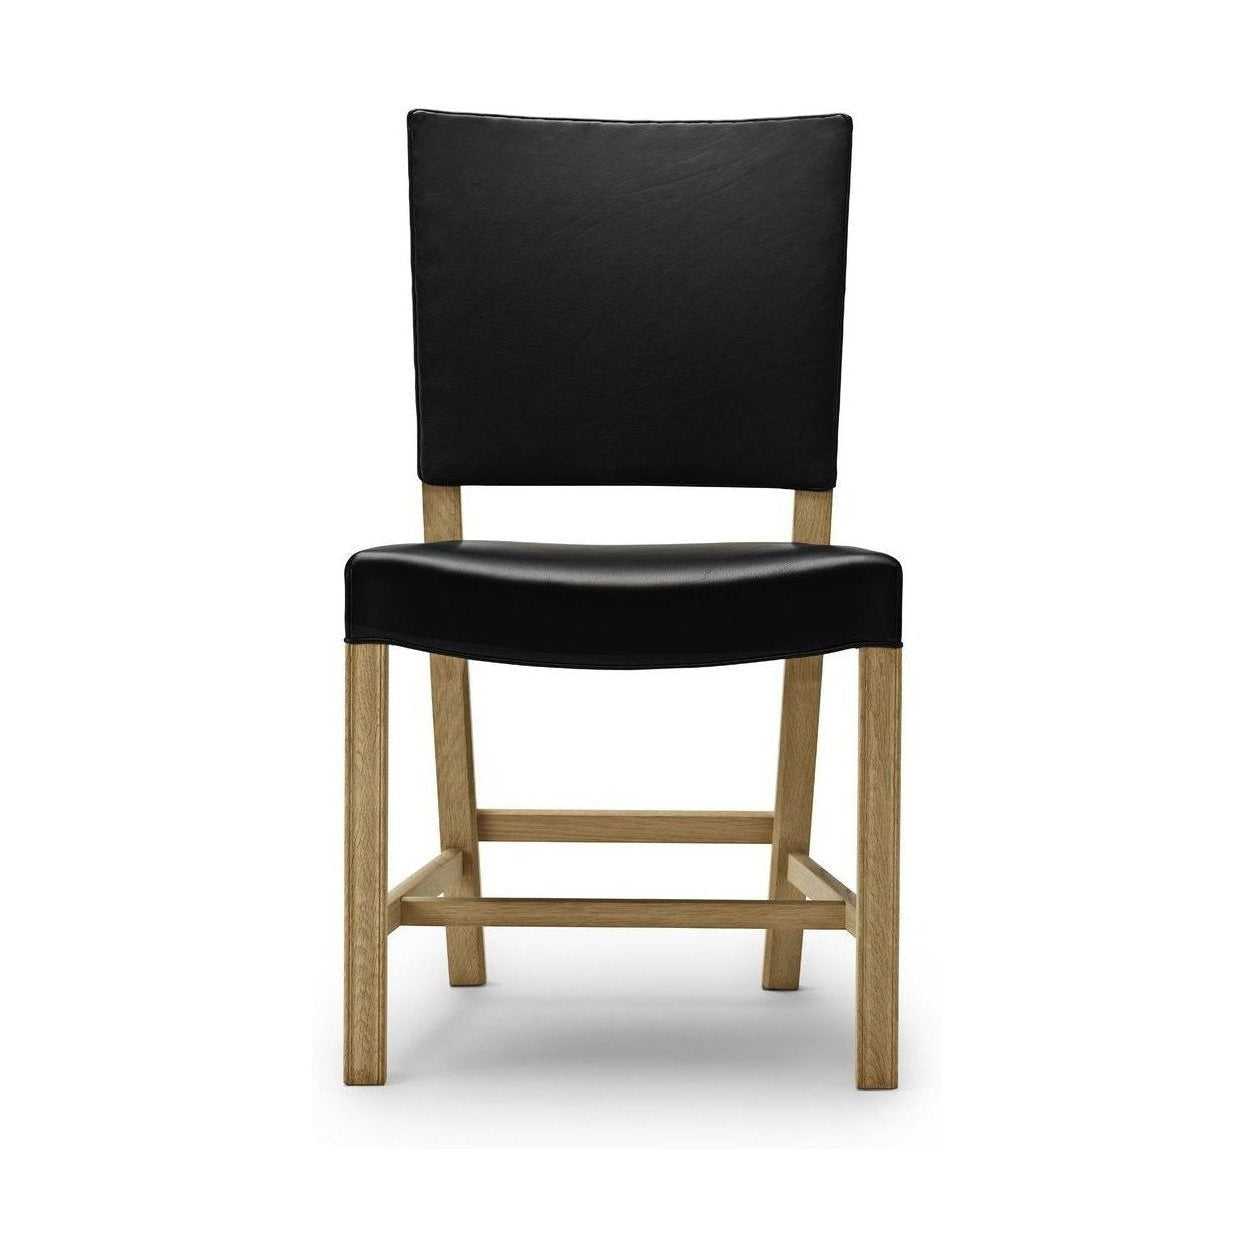 Carl Hansen KK37580 Duże czerwone krzesło, dębowa skóra dębowa/czarna